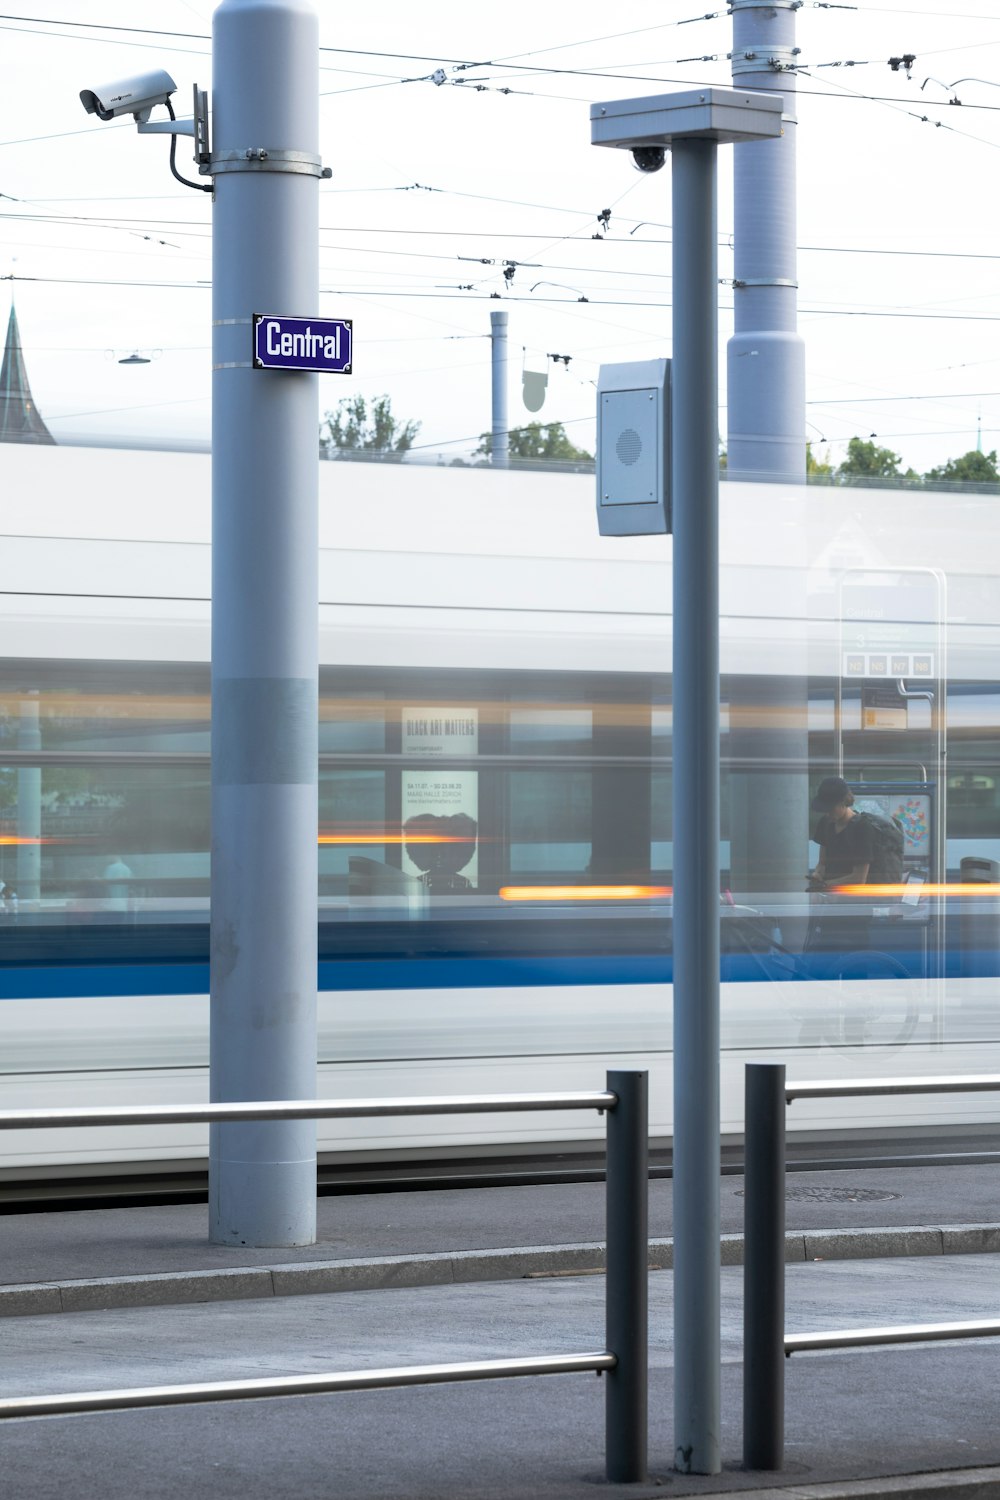 Tren blanco y azul en la estación de tren durante el día